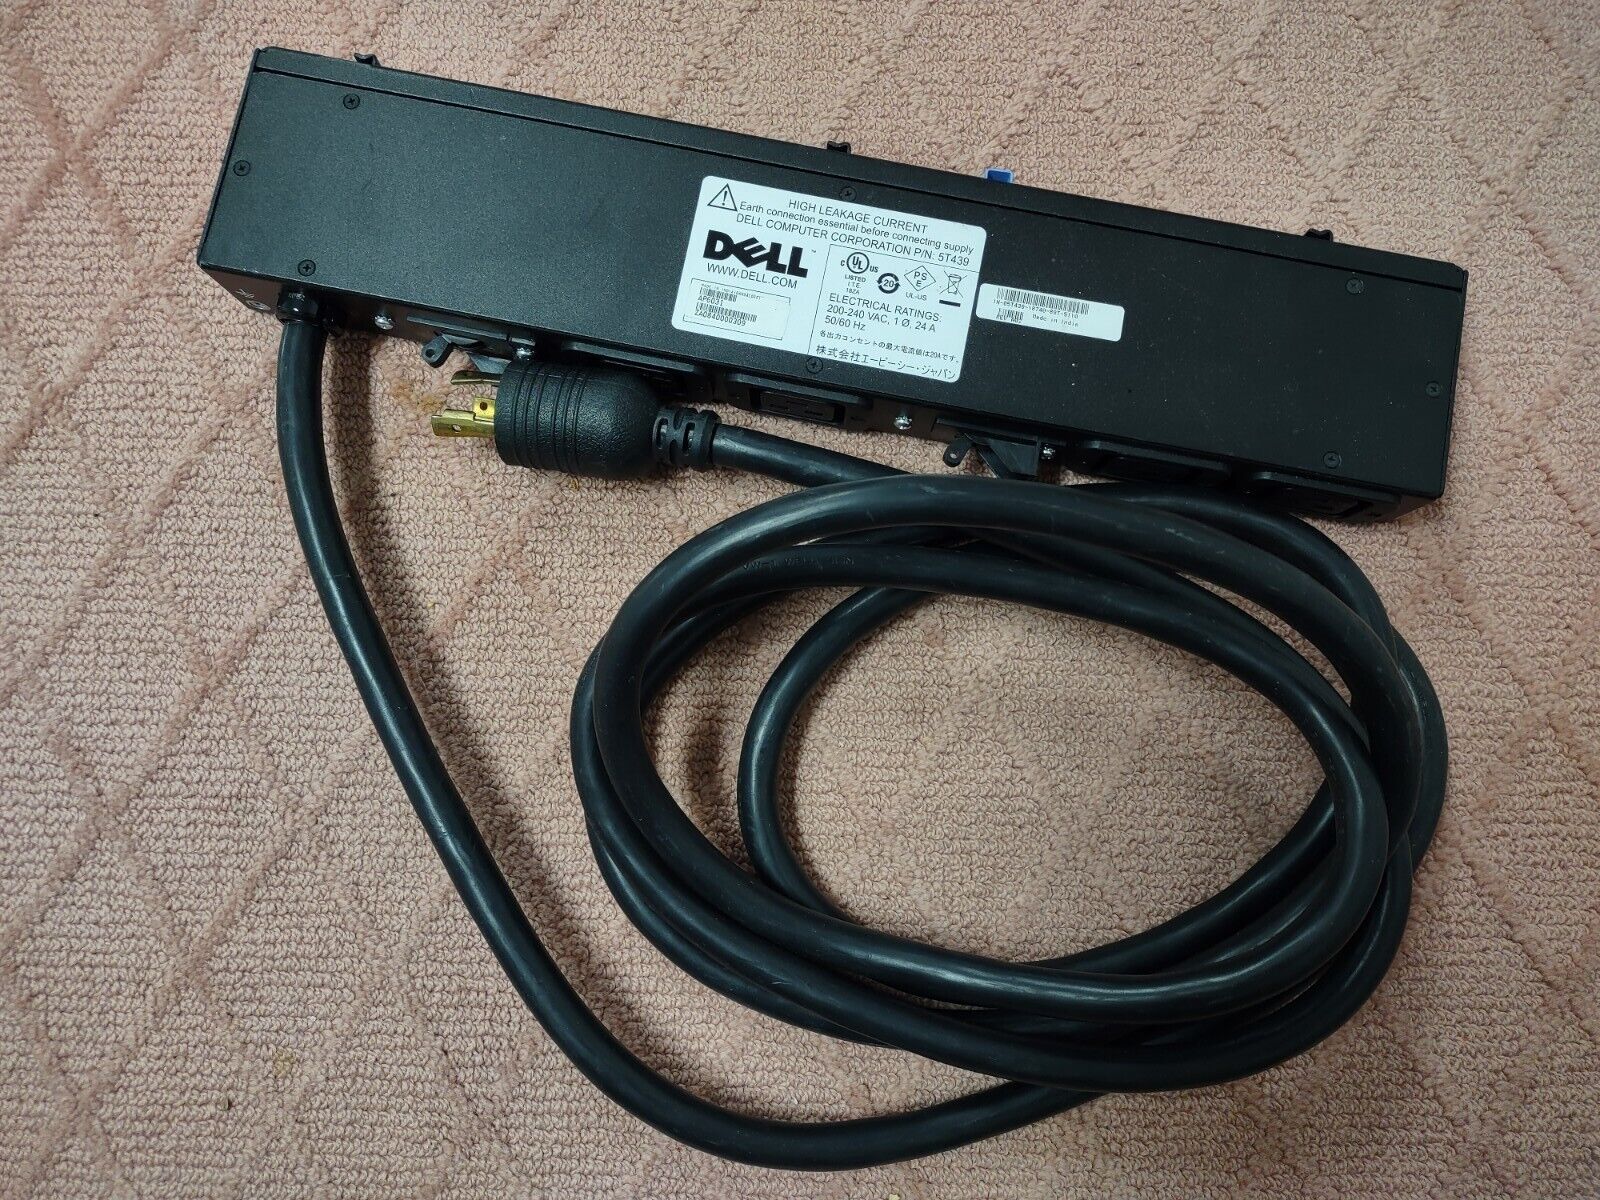 Dell AP6031 24/30A Power Distribution Unit 200-240VAC 24A 4x C19 5T439 PDU